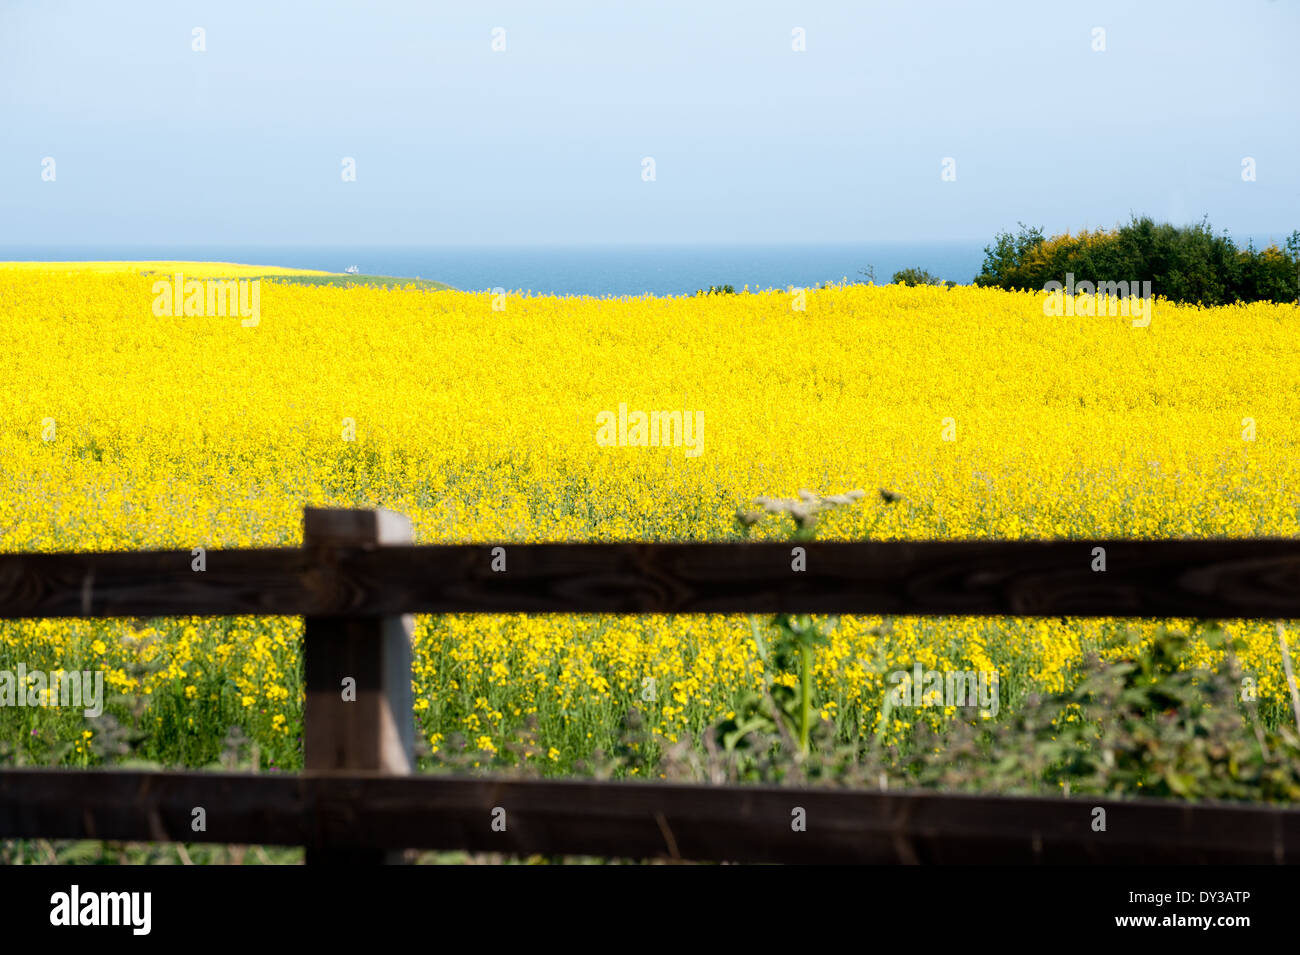 Felder, die mit hellen gelben Raps Blumen bedeckt Stockfoto